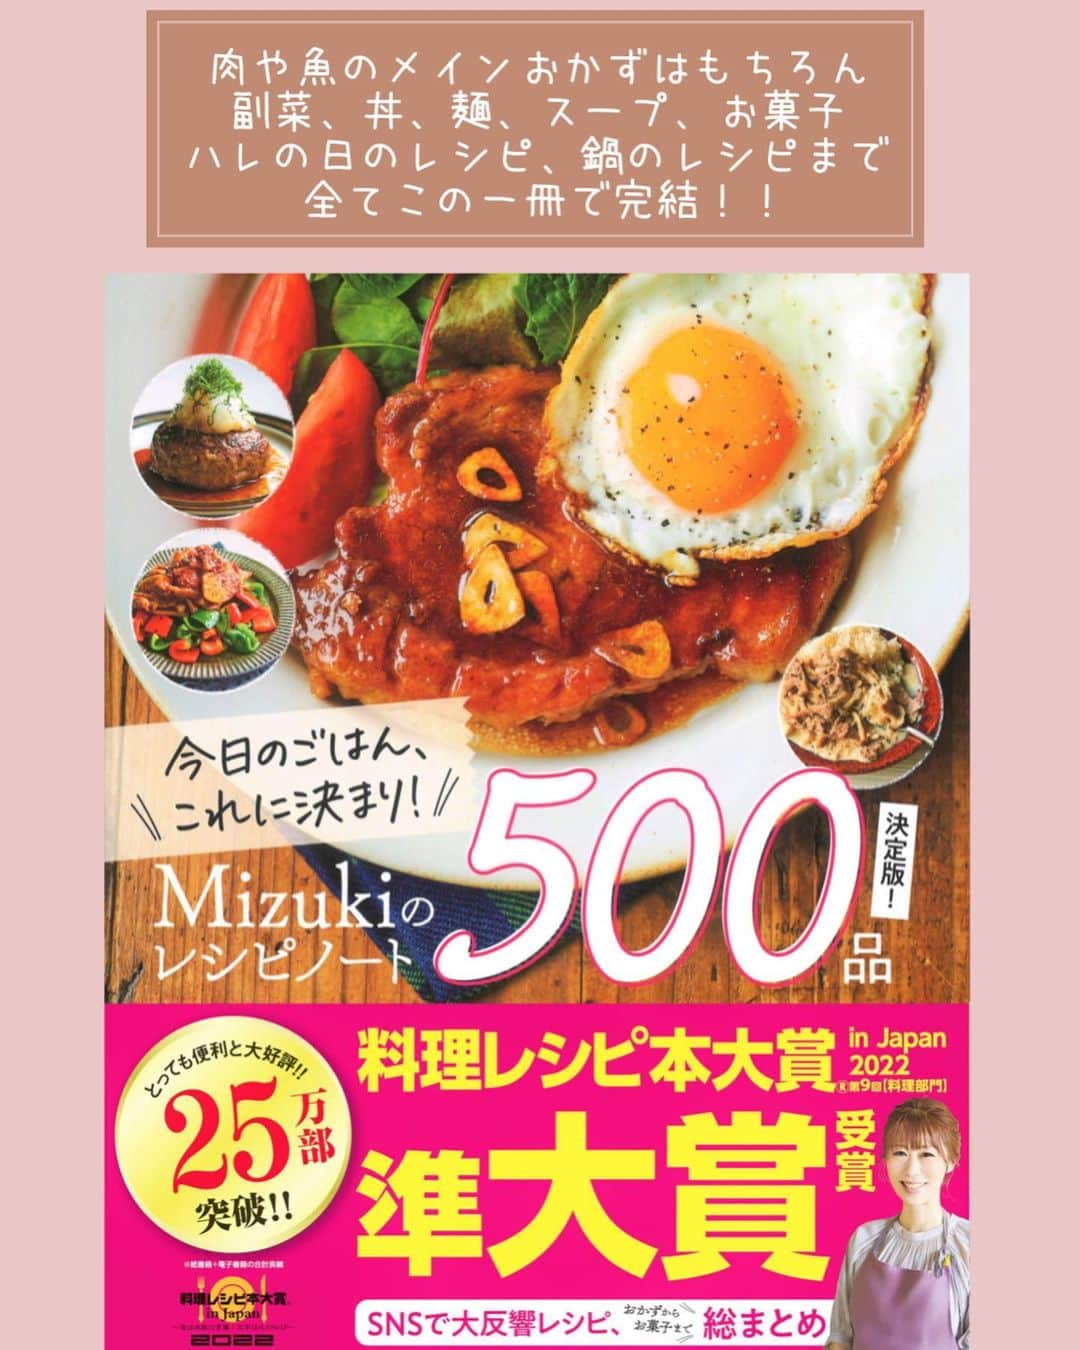 Mizuki【料理ブロガー・簡単レシピ】さんのインスタグラム写真 - (Mizuki【料理ブロガー・簡単レシピ】Instagram)「・煮るだけ簡単💕 ⁡ ［#レシピ ］ ーーーーーーーーーーーーーーーー 飲み干すおいしさ！韓国風肉豆腐 ーーーーーーーーーーーーーーーー ⁡ ⁡ ⁡ おはようございます☺️ ⁡ 今日ご紹介させていただくのは \ 韓国風肉豆腐 / ⁡ ただただ煮るだけの 超簡単お手軽レシピ💕 韓国風★といっても辛さは感じず あっさりコクのあるスープは 飲み干したくなるおいしさですよ〜🤭 ⁡ ボリュームがあってコスパもいいので よかったらお試しくださいね😋 ⁡ ⁡ ⁡ 💬💬💬 謎の暮らしアカウント作りました🏠 変なライブはこっちでやってます🤫 →(@mizuki_kurashi ) ⁡ ⁡ 【簡単・時短・節約レシピ更新中🔻】 @mizuki_31cafe ⁡ ⁡ ⁡ ＿＿＿＿＿＿＿＿＿＿＿＿＿＿＿＿＿＿＿ 【2人分】 豚しゃぶしゃぶ用肉...200g 豆腐...1丁(300g) もやし...1/2袋(100g) ニラ...1/2束 ⚫︎水...400ml ⚫︎醤油...大2 ⚫︎みりん・コチュジャン...各大1 ⚫︎砂糖...小2 ⚫︎鶏がらスープ・ごま油...各小1/2 ⚫︎にんにくチューブ...2cm ごま...適量 ⁡ 1.豆腐は8等分に、ニラは4cm長さに切る。 2.鍋に⚫︎を入れて中火にかけ、煮立ったら豚肉を加えてほぐし、豆腐も加えて5分煮る。 3.もやしを加えてさっと煮、仕上げにニラを加えてごまを振る。 ￣￣￣￣￣￣￣￣￣￣￣￣￣￣￣￣￣￣￣ ⁡ ⁡ 《ポイント》 ♦︎豆腐は絹でも木綿でもOK！(今回木綿) ♦︎あっさりコクのある味わいで、辛さはほぼ感じません♩濃いめの味や辛さを出したい方はコチュジャンを増量してください♩ ♦︎もやしの代わりにキャベツやきのこを加えても◎ ⁡ ⁡ ⁡ ⁡ ⁡ ⁡ 💬💬💬 昨日はライブにお付き合いいただきまして ありがとうございました☺️ 久しぶりの出張ライブでド緊張しましたが 温かく見守っていただいて 本当に有難かったです😭🌸涙 ⁡ 昨日会場には 30名のお客様にいらしていただいて ライブ後はショウルームを回ったり お話ししたり写真を撮っていただいたり とっても楽しい時間を過ごしました✨ 実際お顔を見てお話しできるのって すごくすごく幸せですね🥺🌸 ⁡ そしてなんだろう••• はじめて会った気がしないというか💦 ライブやオンライン教室にご参加いただいたり 普段コメントをいただいたりしているからか もうずっと前から知っているような 不思議な気持ちになっていました☺️ ⁡ いつかまたこうして お会いできる機会がありますように🥰 今回こんな機会を作ってくださった パナソニックさん(@sumai_panasonic ) にも 心から感謝申し上げます🥲💕 本当にありがとうございました🥰 ⁡ ⁡ ⁡ ⁡ ⁡ ⁡ 𖤣𖥧𖥣𖡡𖥧𖤣✨ 愛用している調理器具や器などは #楽天ROOMに載せてます ‎𐩢𐩺 (ハイライトから飛べます🛍) ⁡ ⁡ ⁡ ⁡ ⁡ ⁡ 🔶全国の書店・ネット書店で発売中🔶 ⁡ ✼••┈┈┈┈┈••✼••┈┈┈┈┈••✼ 今日のごはんこれに決まり！ ‎𓊆#Mizukiのレシピノート 500品𓊇 ✼••┈┈┈┈┈••✼••┈┈┈┈┈••✼ ⁡ ˗ˏˋ おかげさまで25万部突破 ˎˊ˗ 料理レシピ本大賞準大賞を受賞しました🙇‍♀️ ⁡ 6000点の中からレシピを厳選し まさかの【500レシピ掲載】❣️ 肉や魚のメインおかずはもちろん 副菜、丼、麺、スープ、お菓子 ハレの日のレシピ、鍋のレシピまで 全てこの一冊で完結𓌉◯𓇋✨ ⁡ ⁡ ⁡ ⁡ ✼••┈┈┈••✼••┈┈┈••✼ Mizukiのカンタン手作り   𓊆 #3時のおやつ 𓊇 ✼••┈┈┈••✼••┈┈┈••✼ ⁡ 『3分クッキング』で連載中の 「Mizukiのカンタン手作り」 ‎4年分のおやつが1冊になりました！ ❝オーブンなしで❞ 身近な材料と道具でできる 簡単、手軽なおやつを80品🍪 ⁡ ⁡ ⁡ ⁡ ⁡ #韓国風肉豆腐m #韓国風肉豆腐 #豚肉 #豆腐レシピ #もやしレシピ #ニラレシピ #煮るだけ #肉豆腐 #節約料理 #簡単料理  #時短料理 #料理 #mizukiレシピ  #アルモンデ #時短レシピ #節約レシピ #簡単レシピ」5月28日 7時58分 - mizuki_31cafe